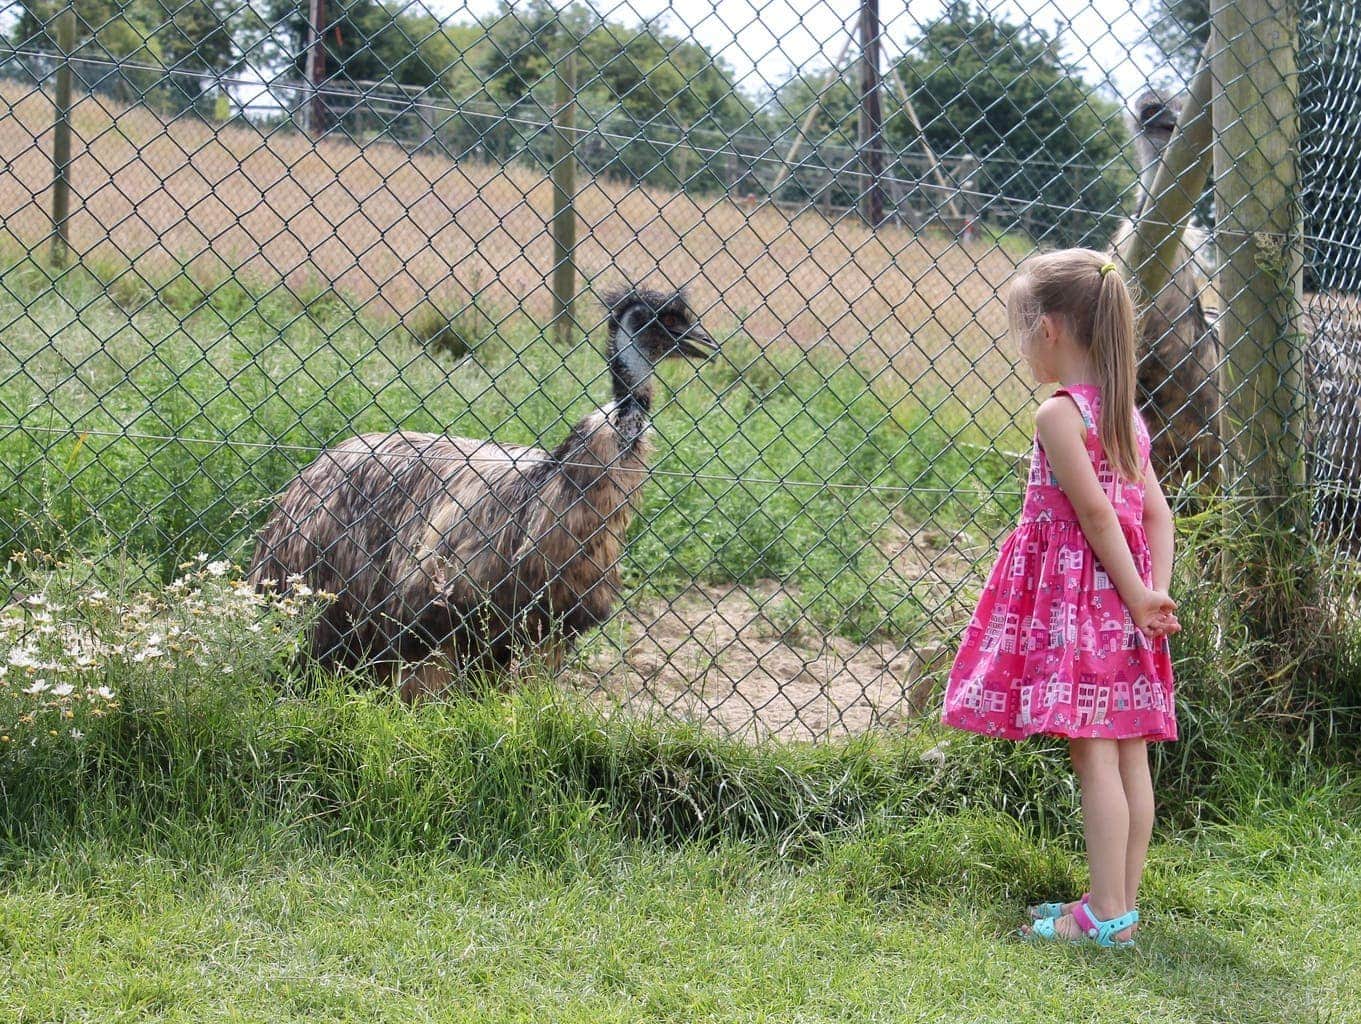 Noah's Ark Zoo Farm Review | Family Fun in Bristol www.minitravellers.co.uk